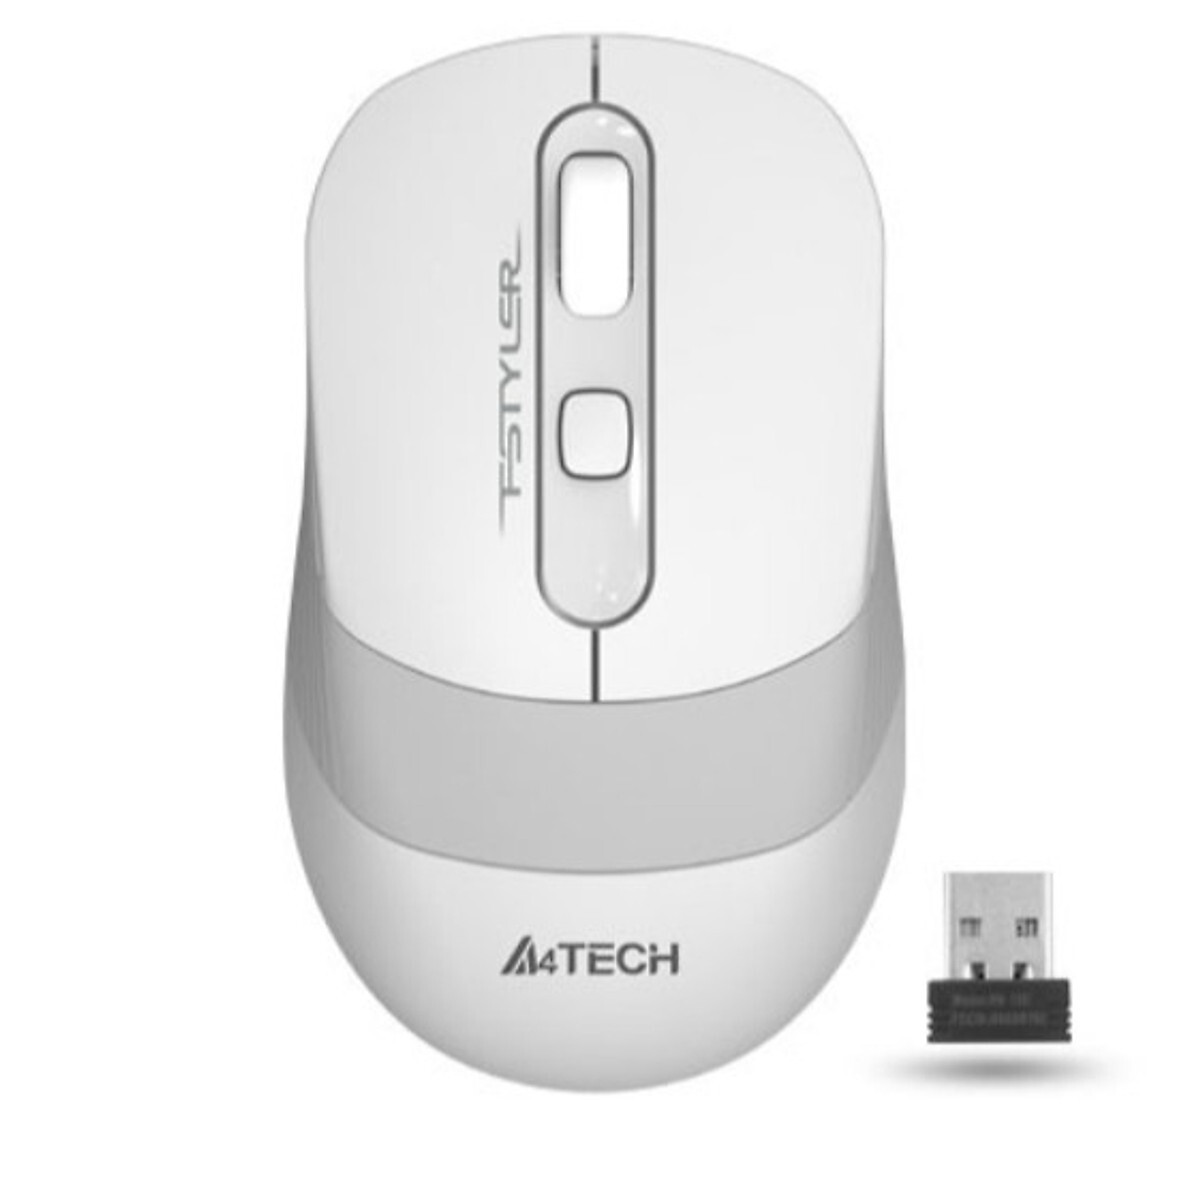 Chuột máy tính - Mouse A4tech FStyler 2.4G Wireless FG10